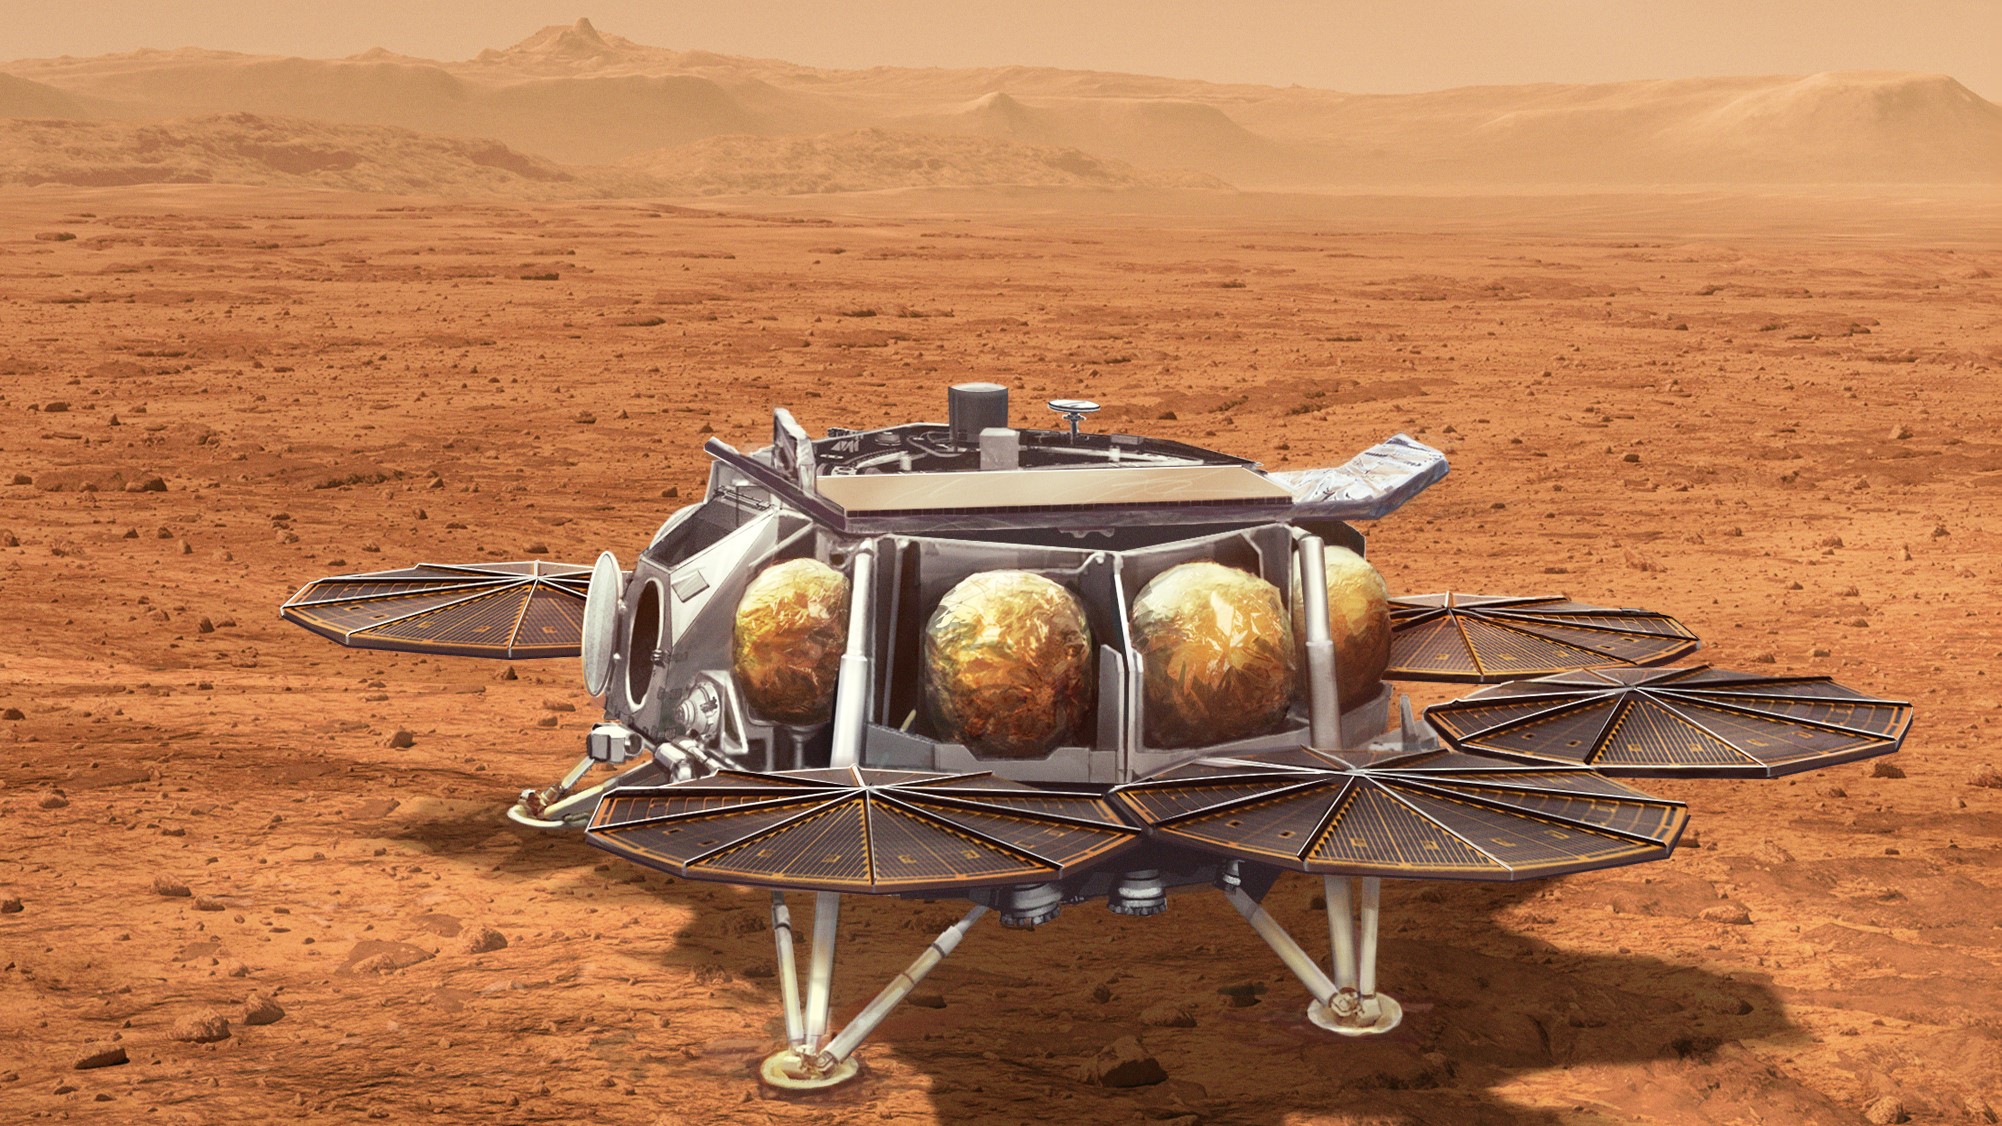 Mars sample return details coming next week, NASA and European Space Agency promise